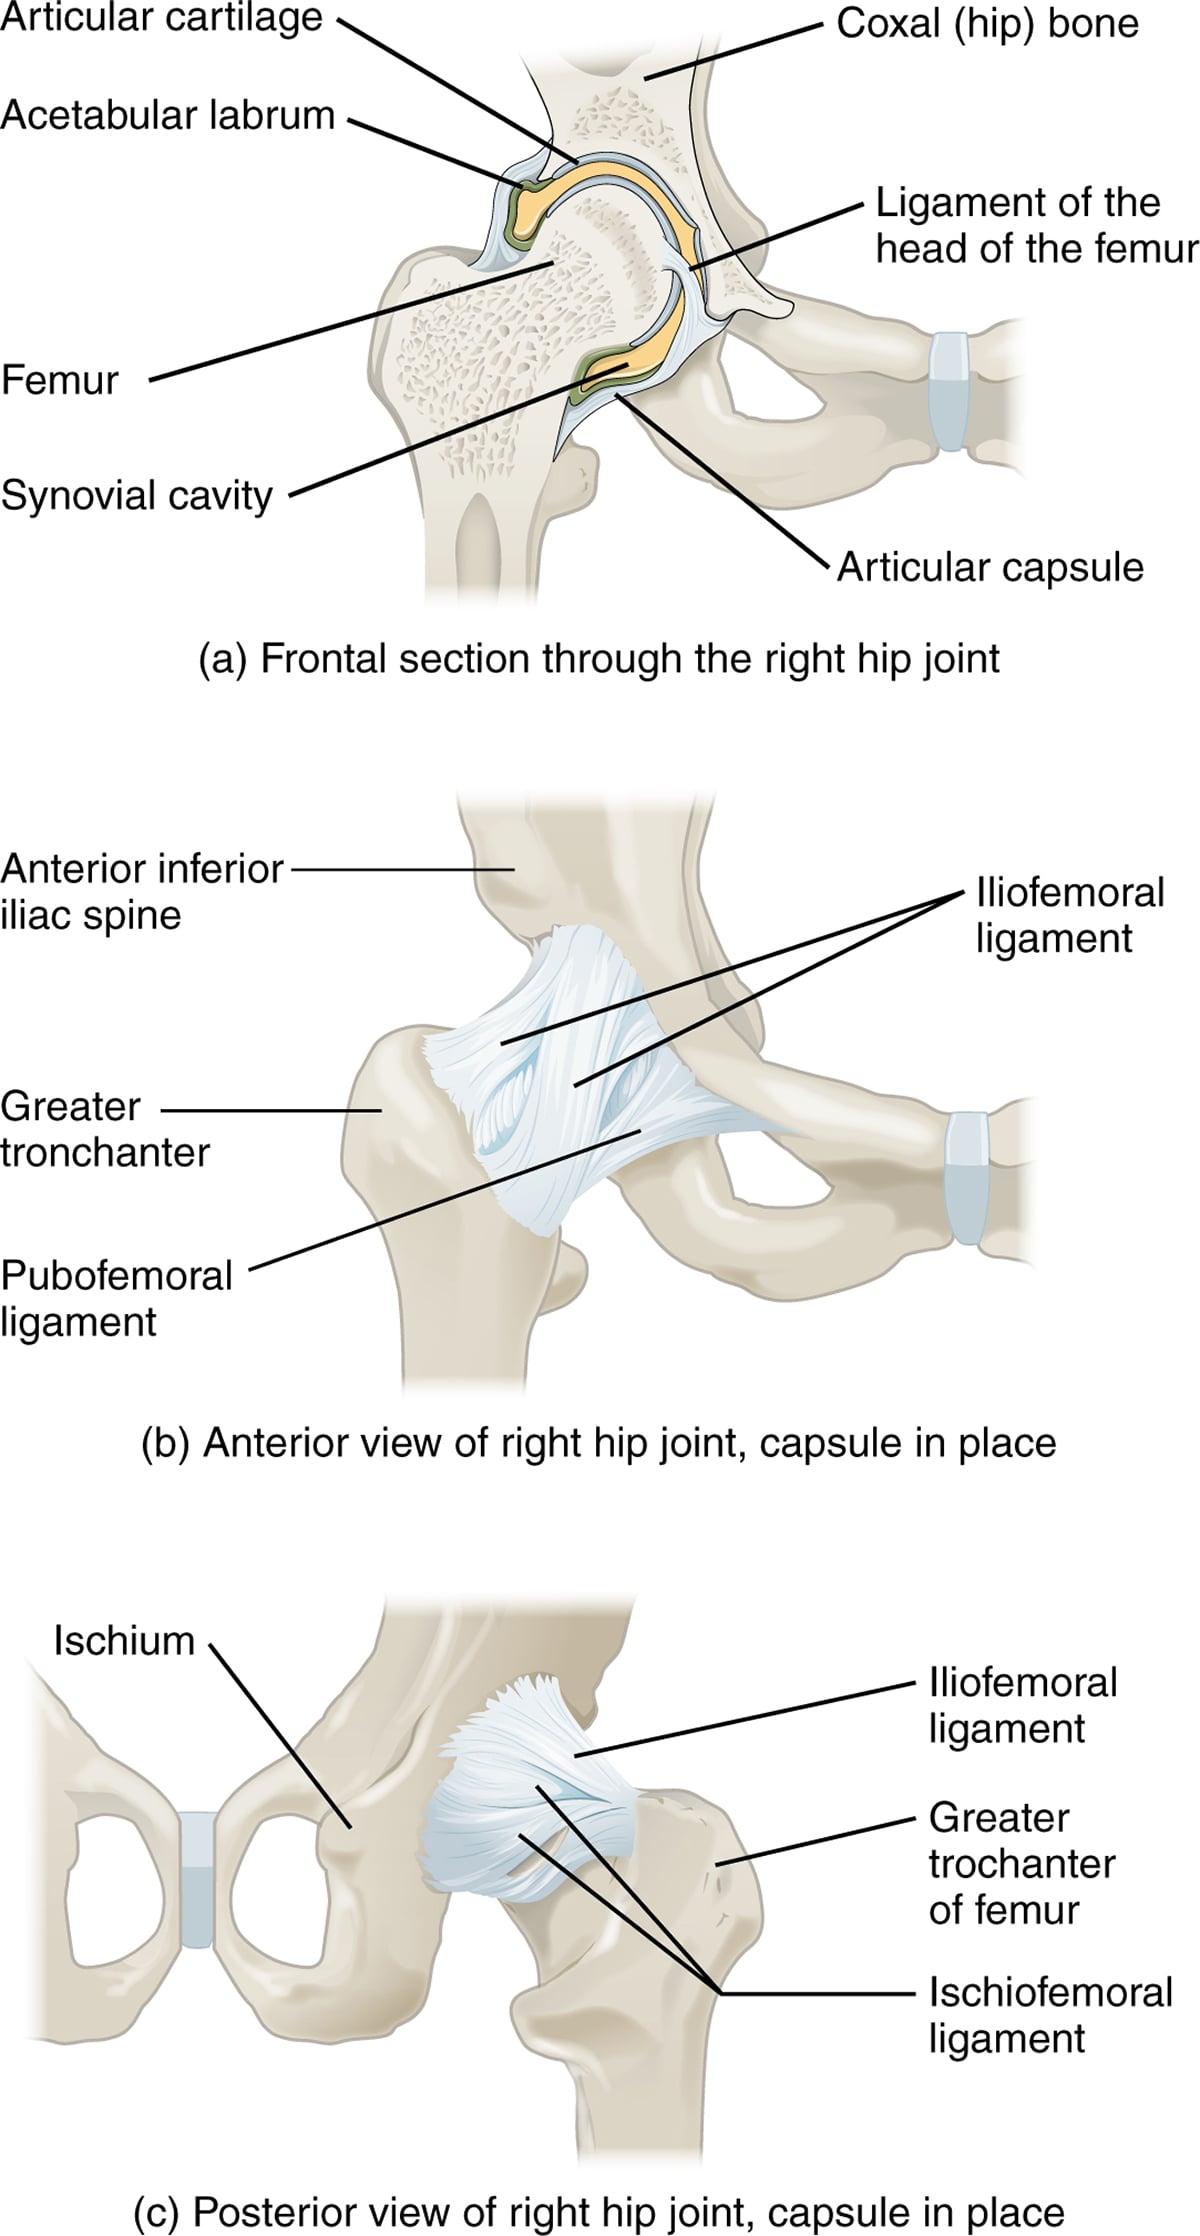 hip bones showing